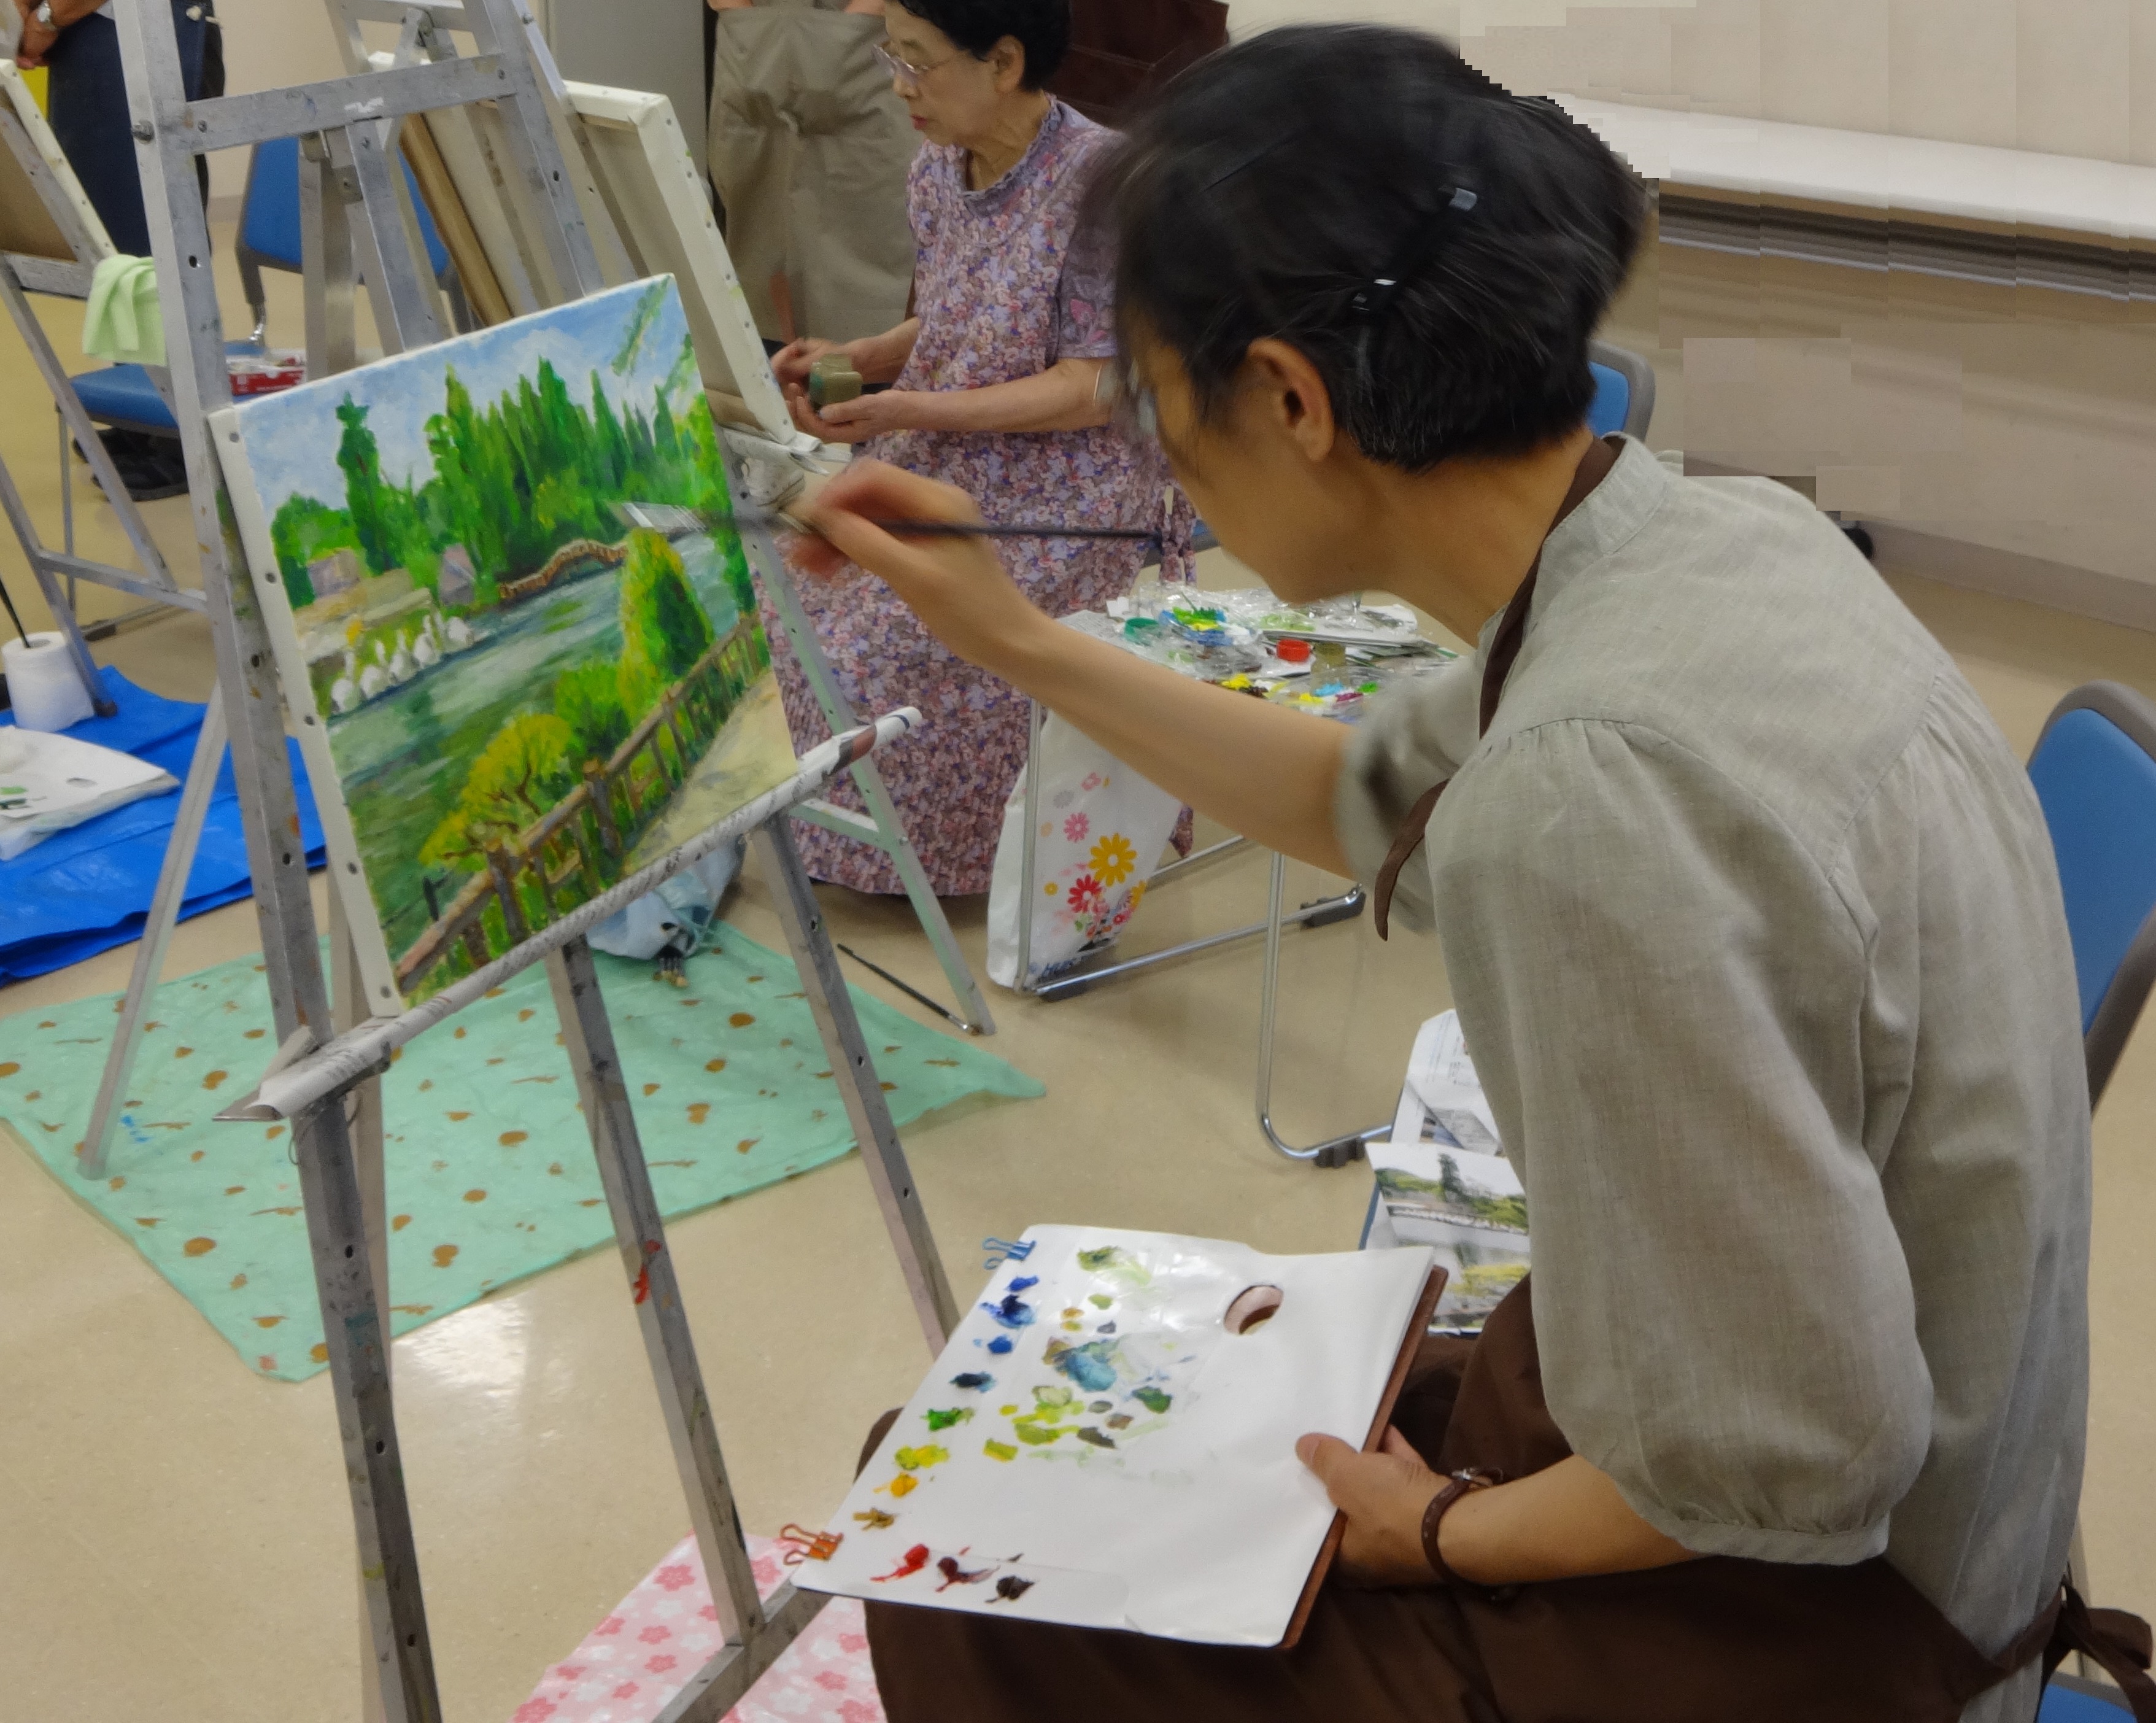 ー基礎から学ぶー やさしい油絵入門【キャンセル待ち受付中】 | 生涯学習オープンスクール | NHK学園